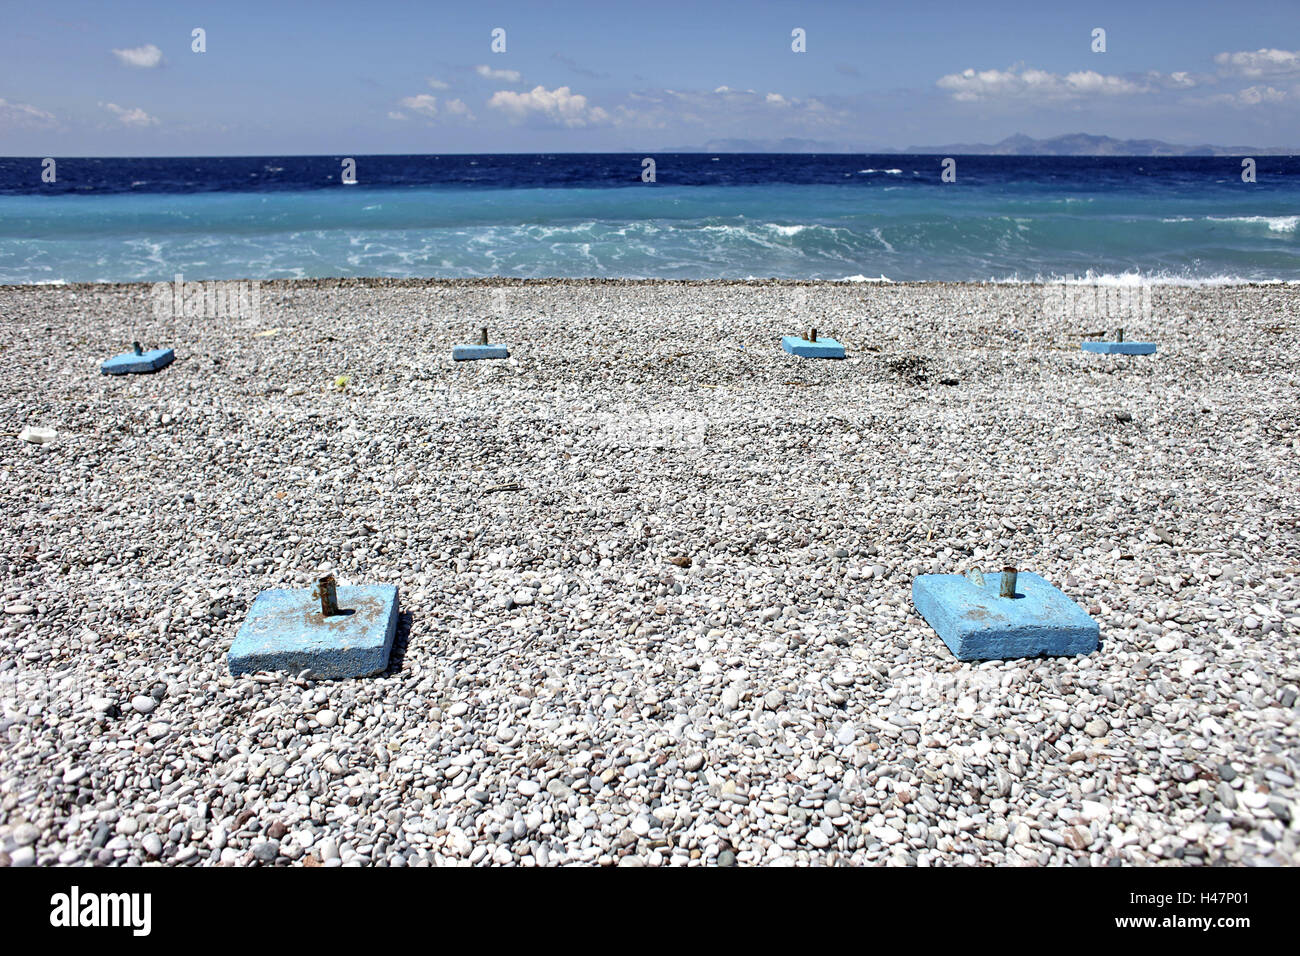 Griechenland, Rhodos, Strand, Schirmständer, Kiesstrand, keine Menschen  Stockfotografie - Alamy